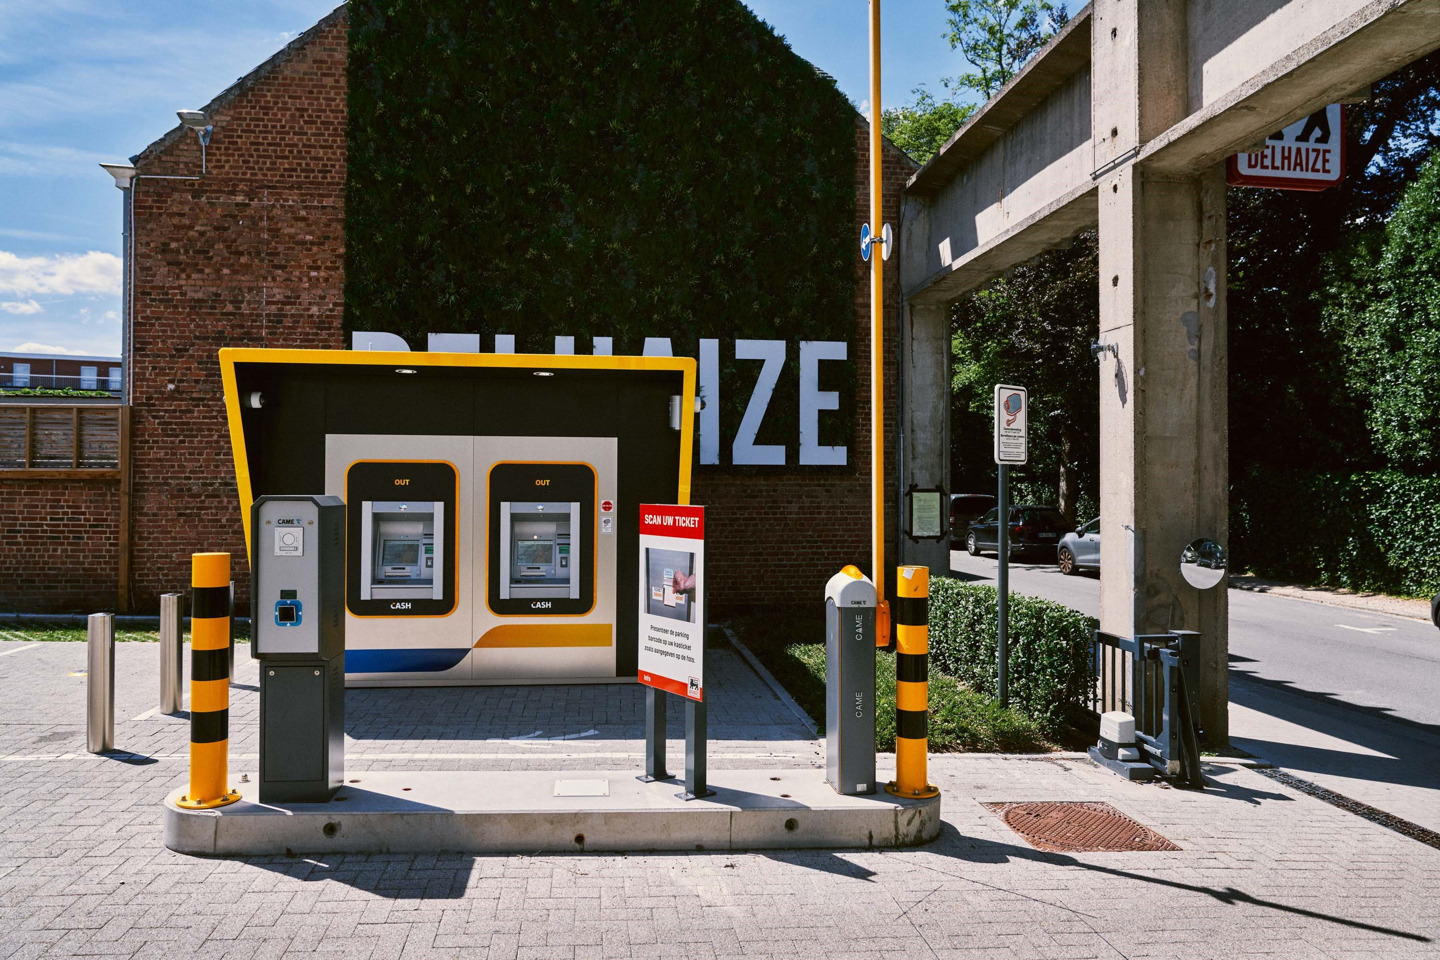 Primeur: Delhaize en Batopin installeren samen eerste extern CASH-punt op parking supermarkt